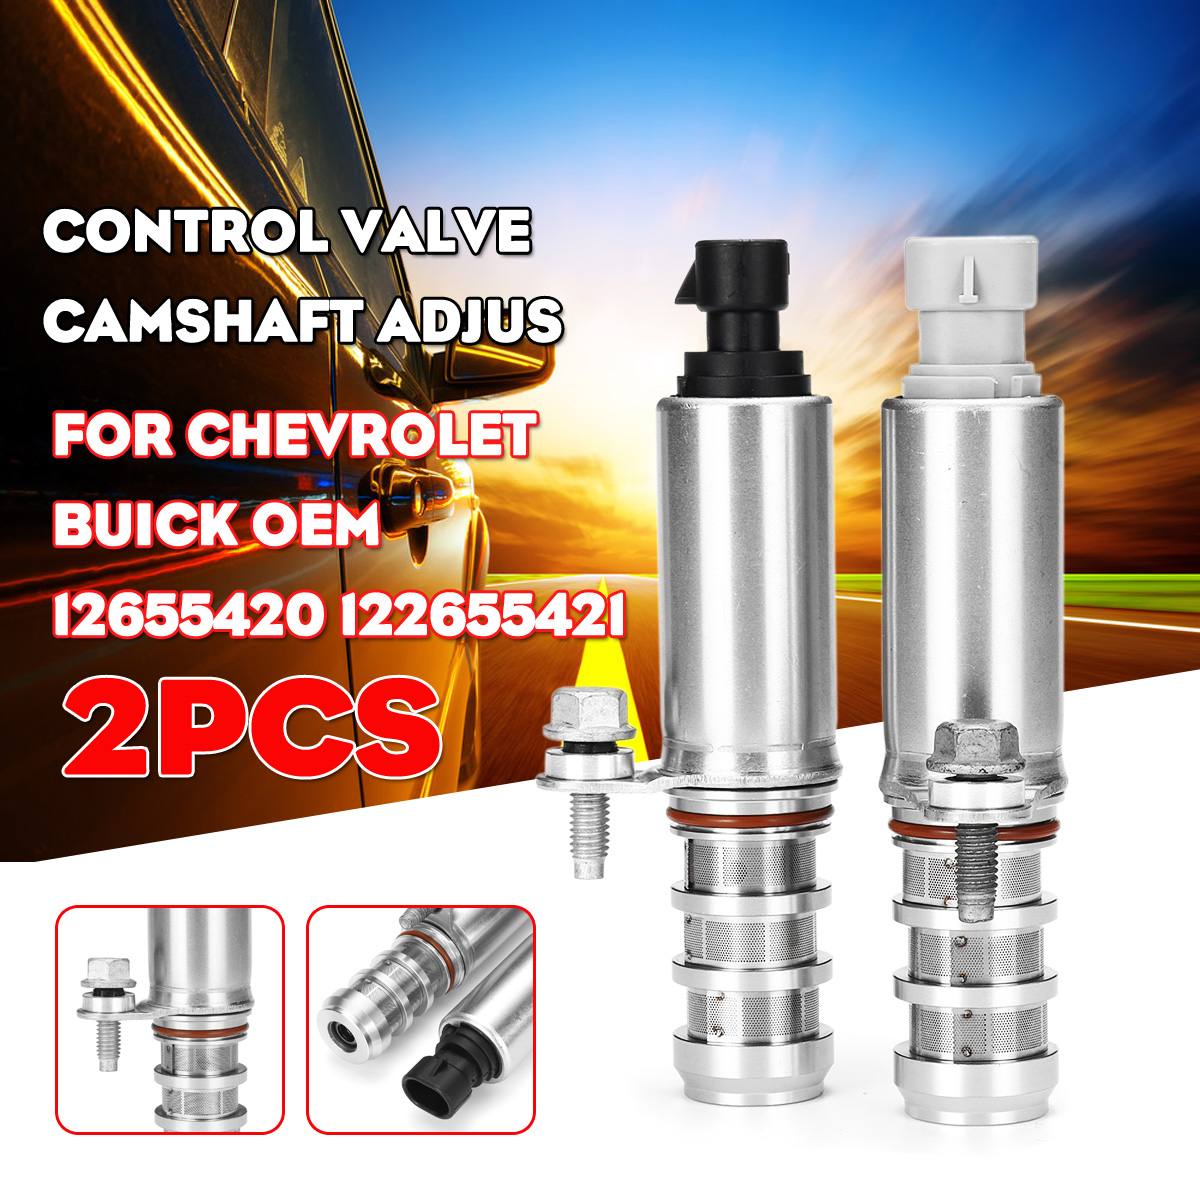 2pcs-Control-Valve-camshaft-adjus-For-Chevrolet-Buick-OEM-12655420-122655421-1751978-2